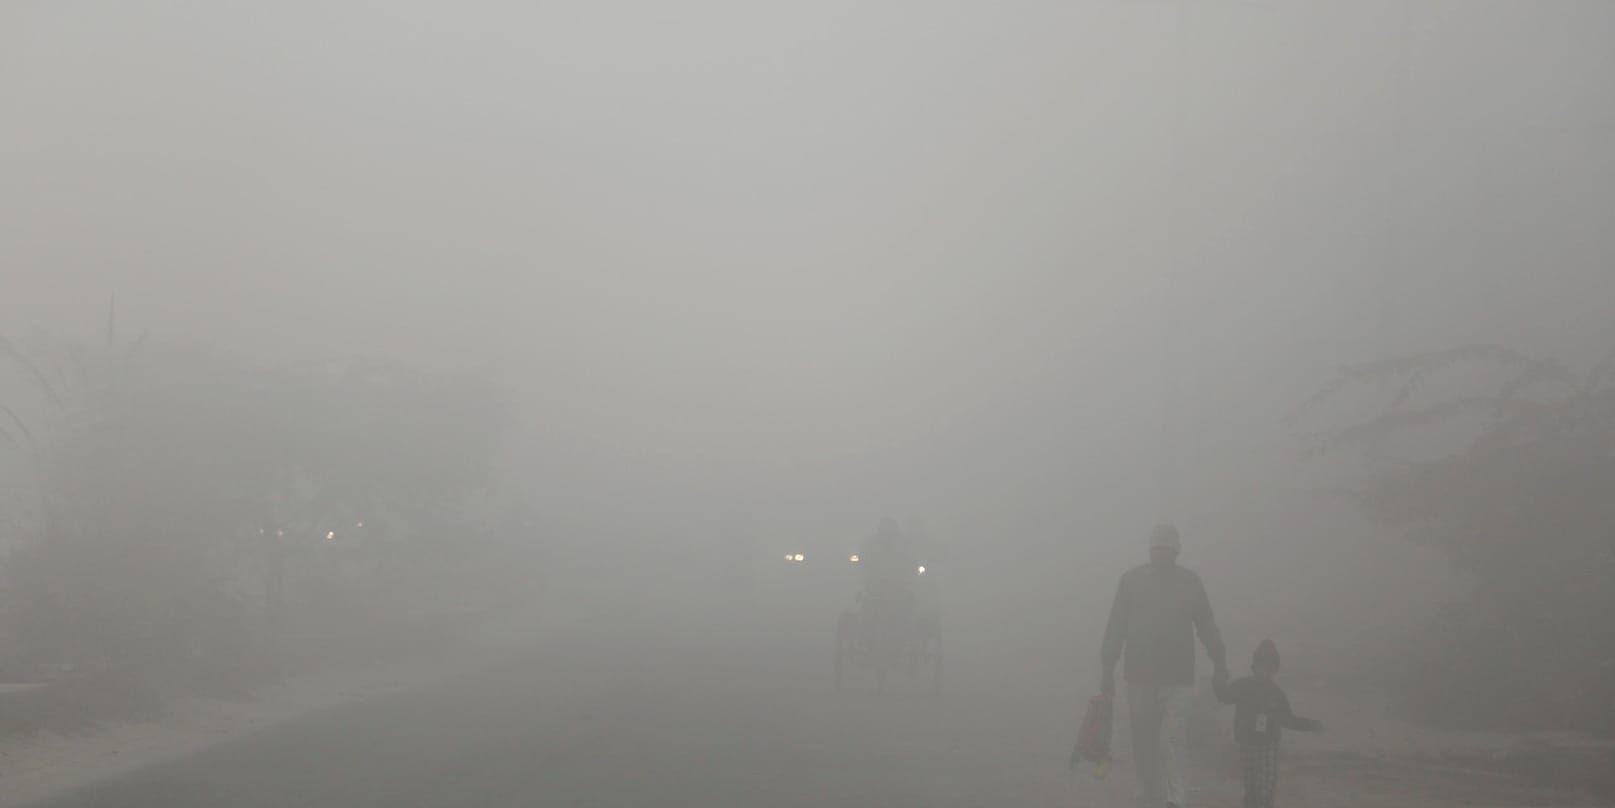 En väg i utkanten av Indiens huvudstad New Delhi i november.